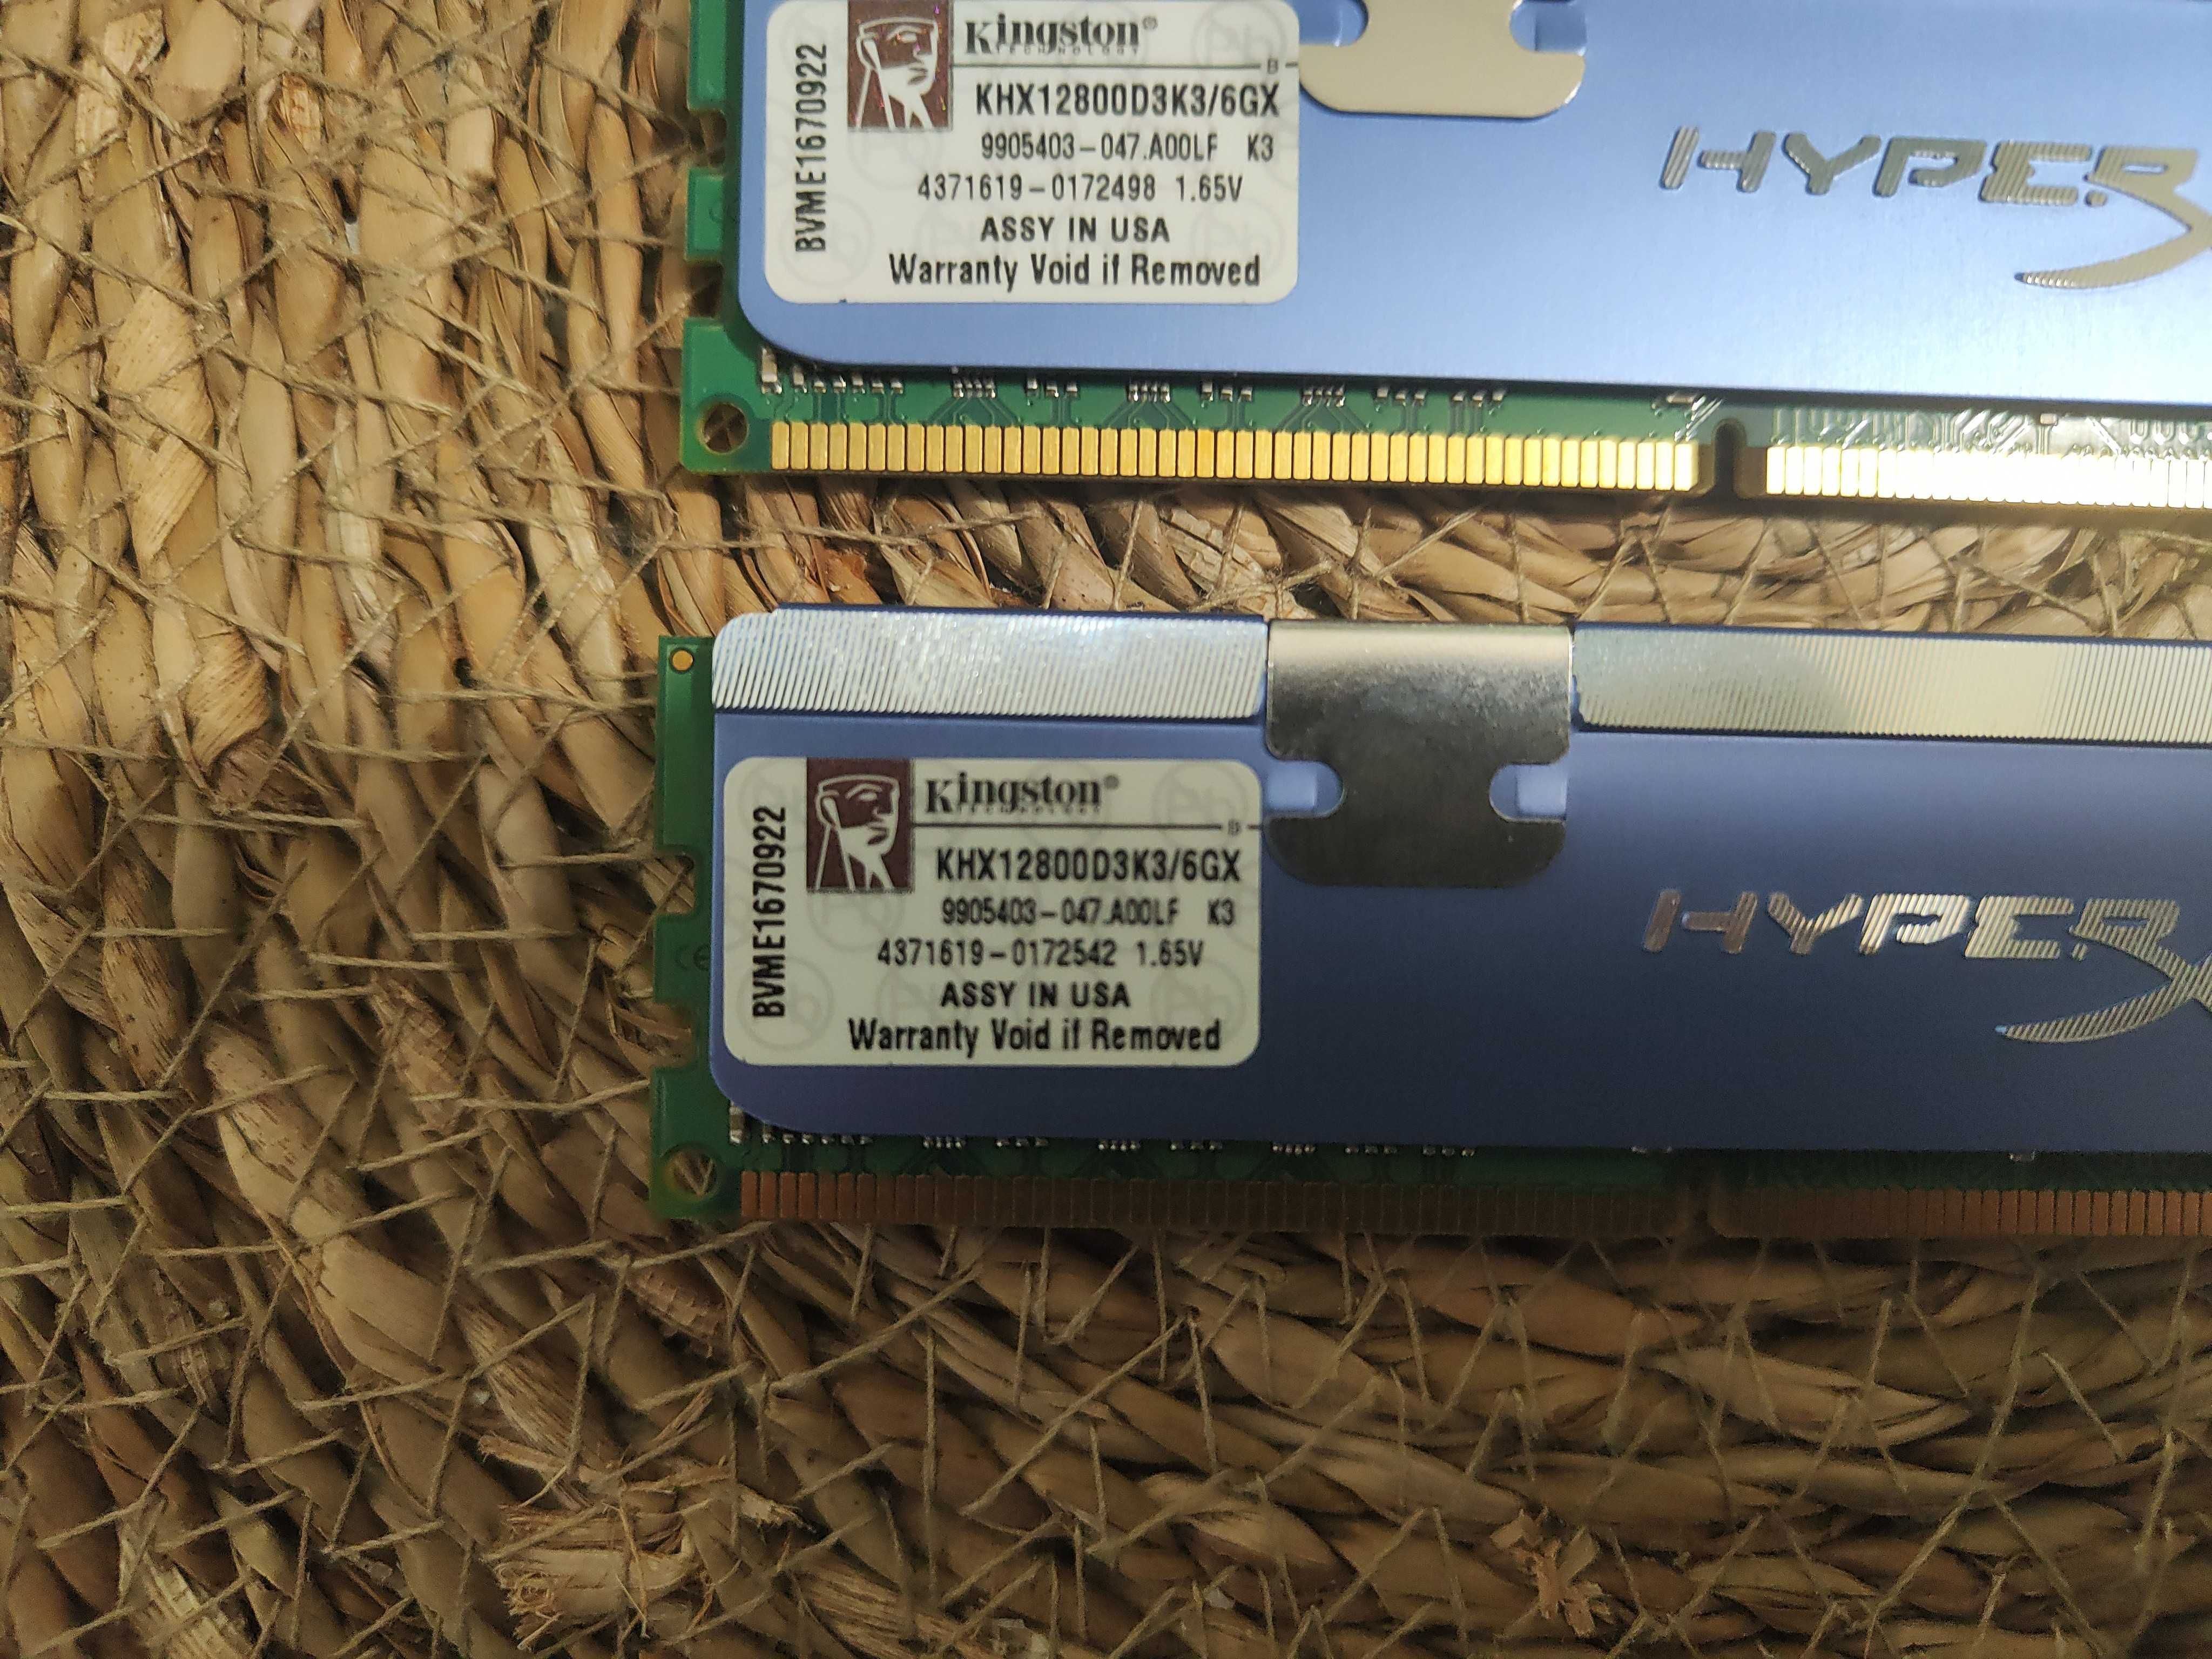 DDR 3 Kingston HYPERX - 8 GB (4 X 2 GB)